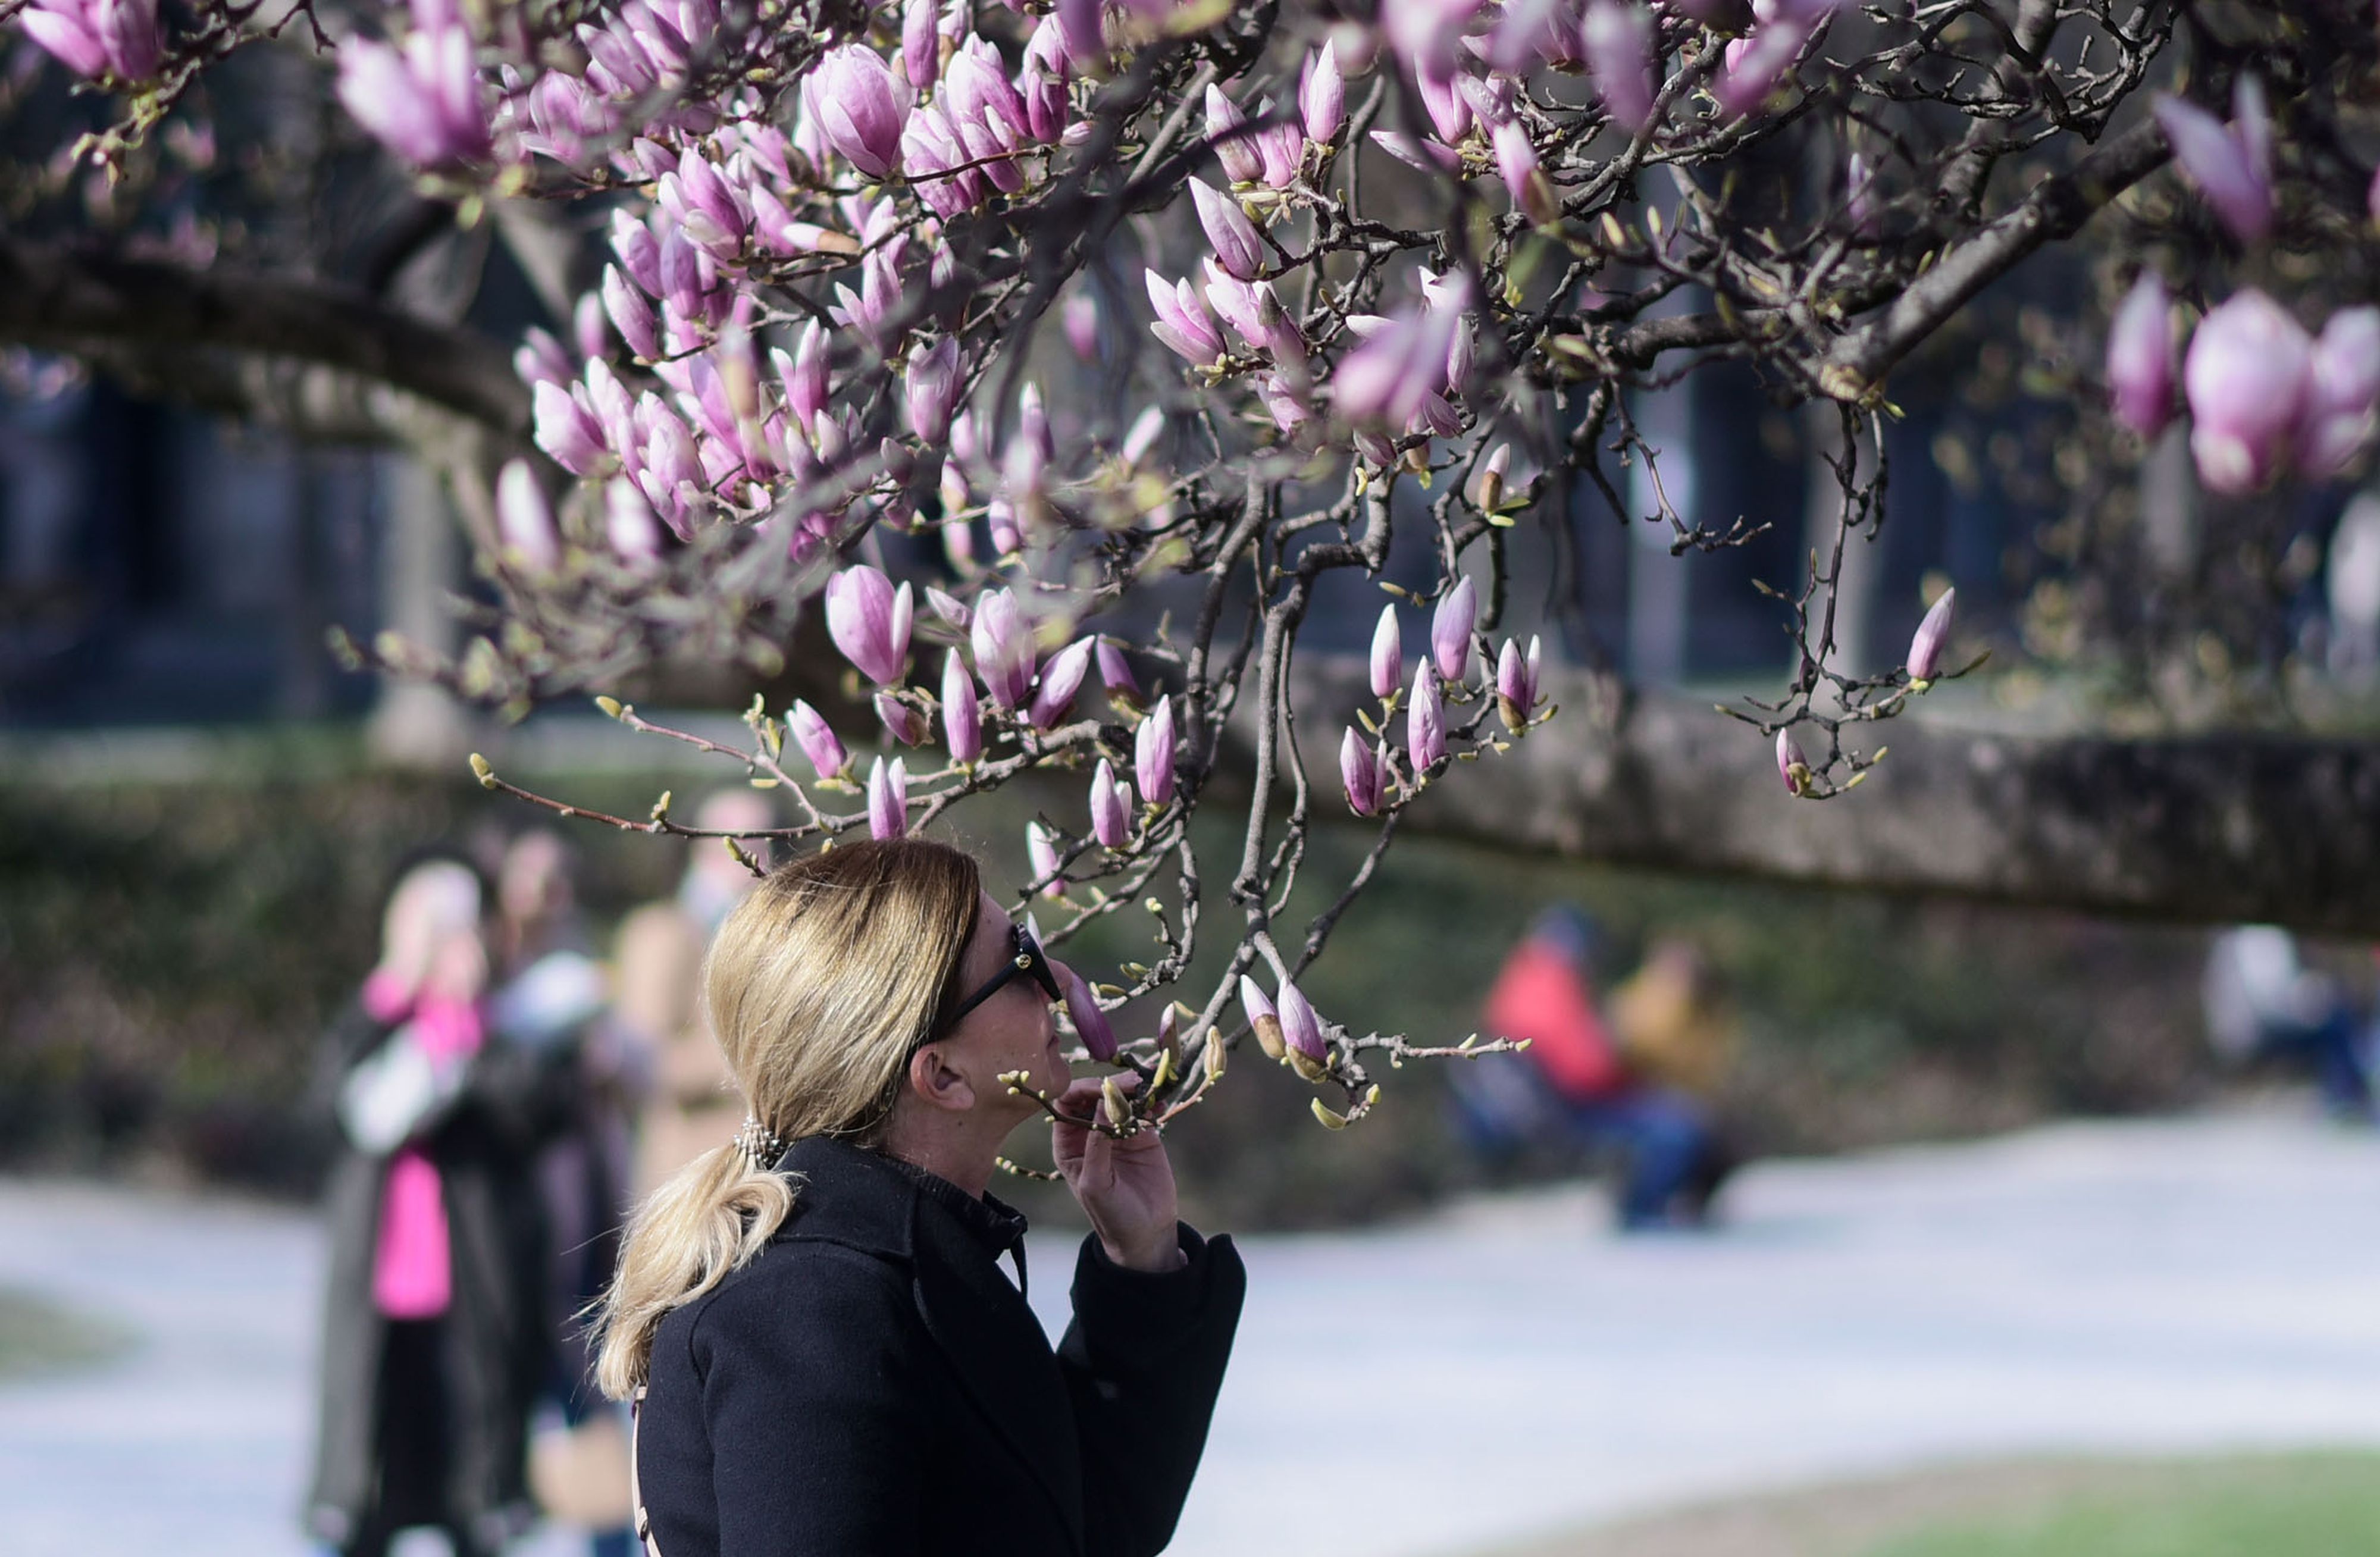 Procvjetala je magnolija na zagrebačkom Tomislavcu i Zagrebu time nagovijestila dolazak proljeća